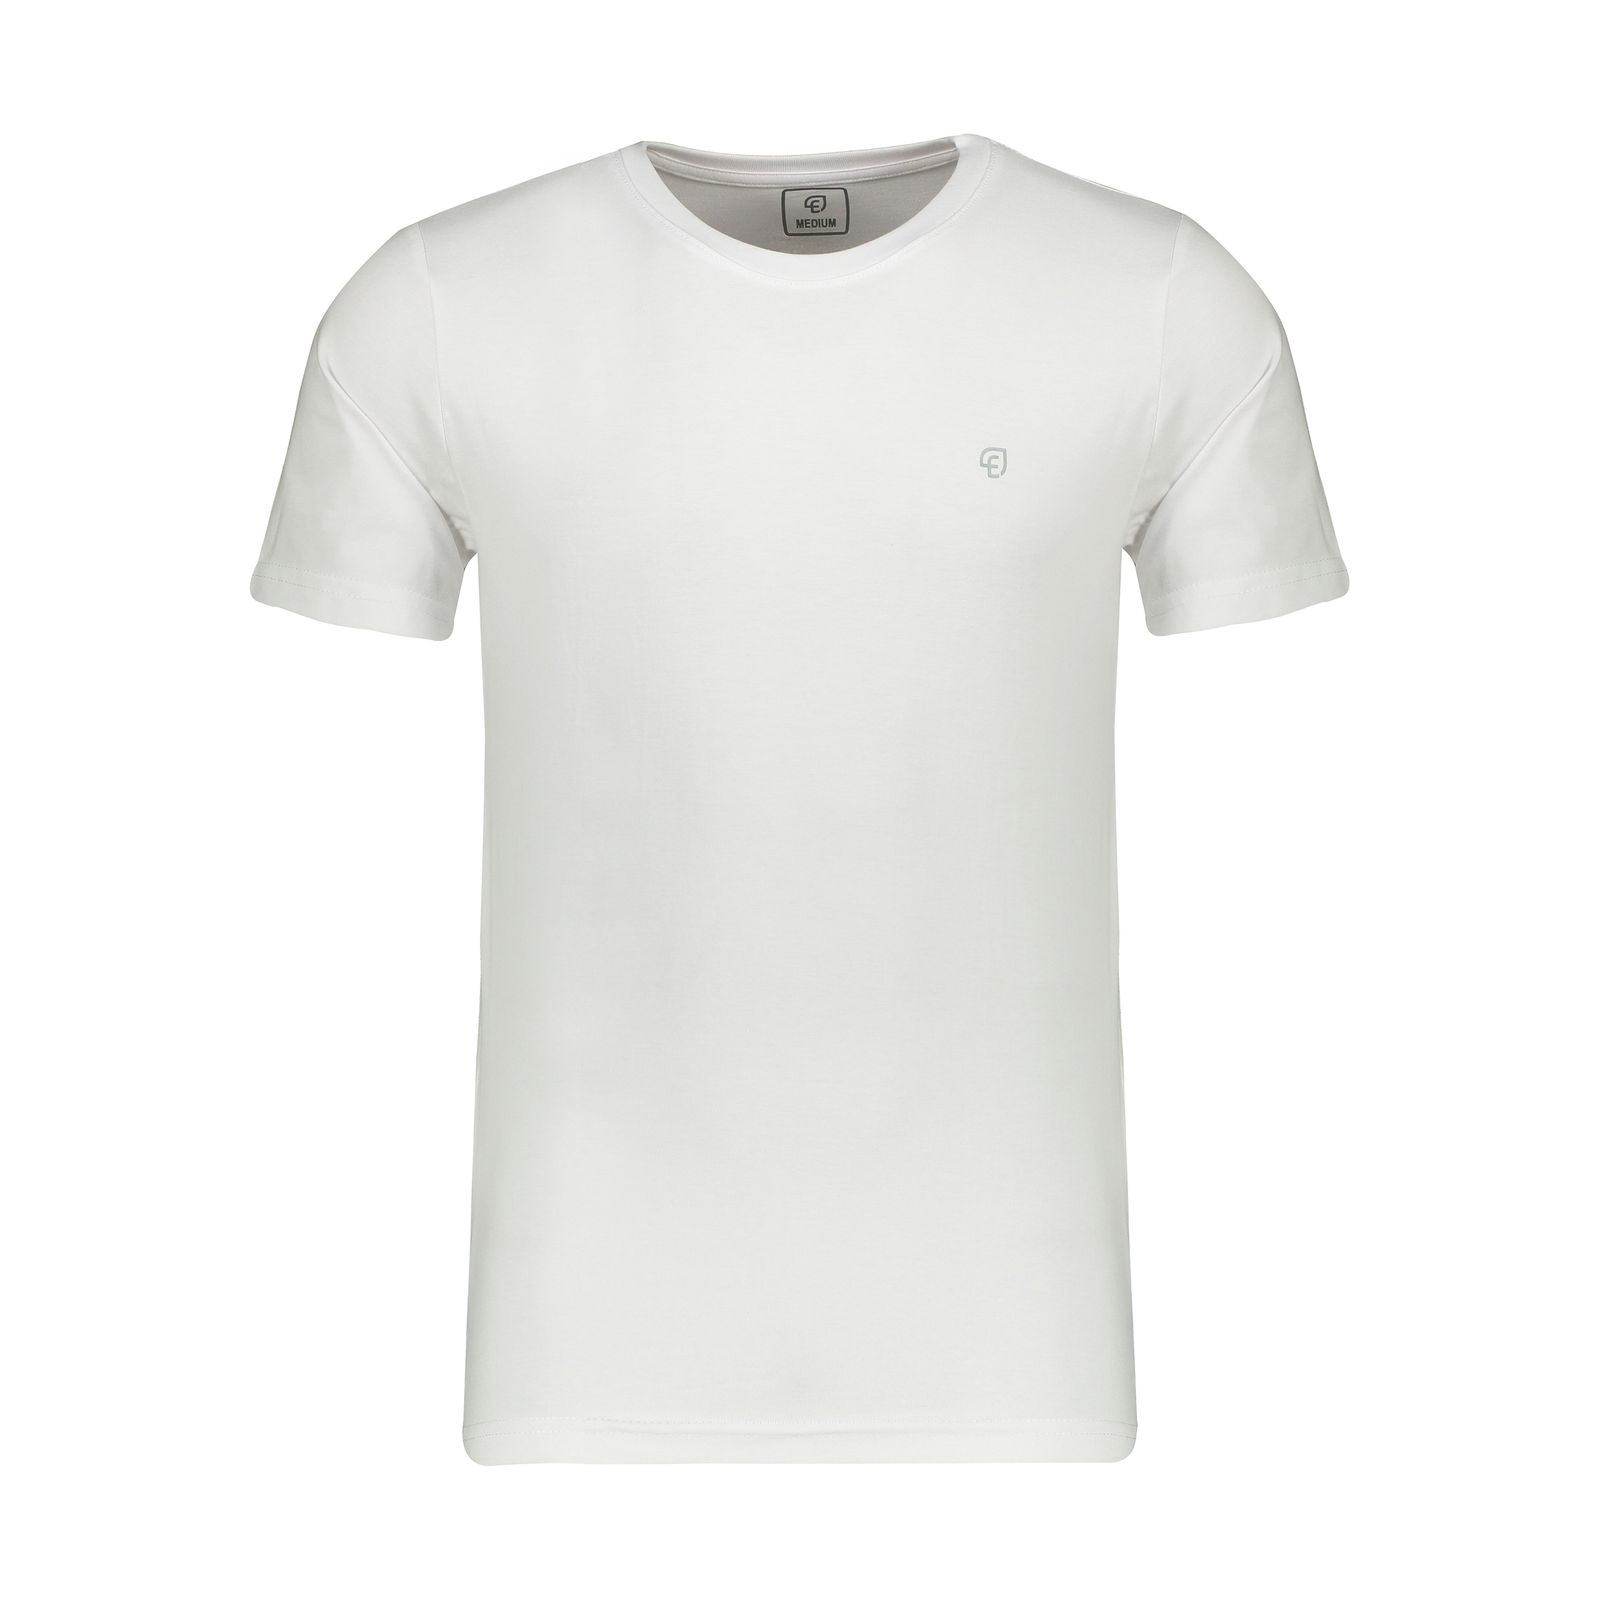 تی شرت ورزشی مردانه الوج مدل M07179-002 -  - 1